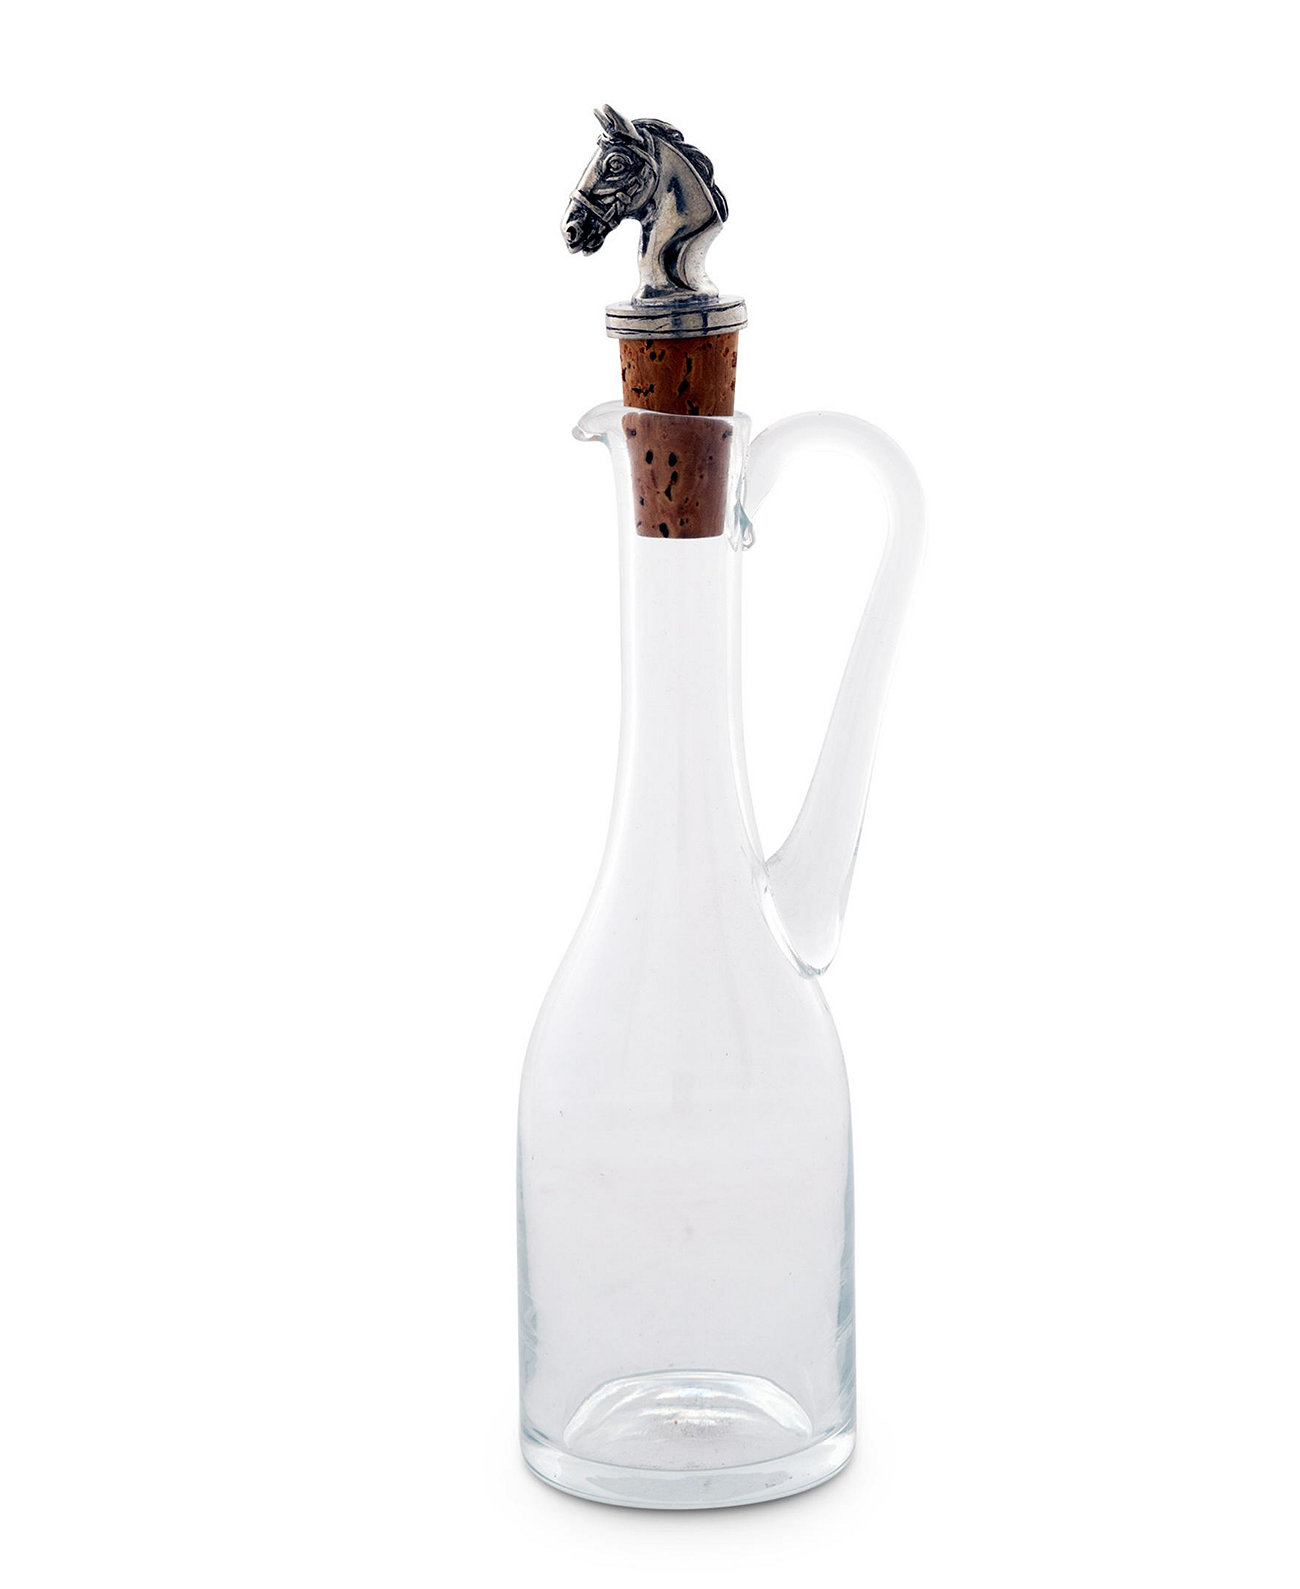 Выдувная стеклянная бутылка на 5 унций с пробкой и цельной оловянной головой лошади Vagabond House